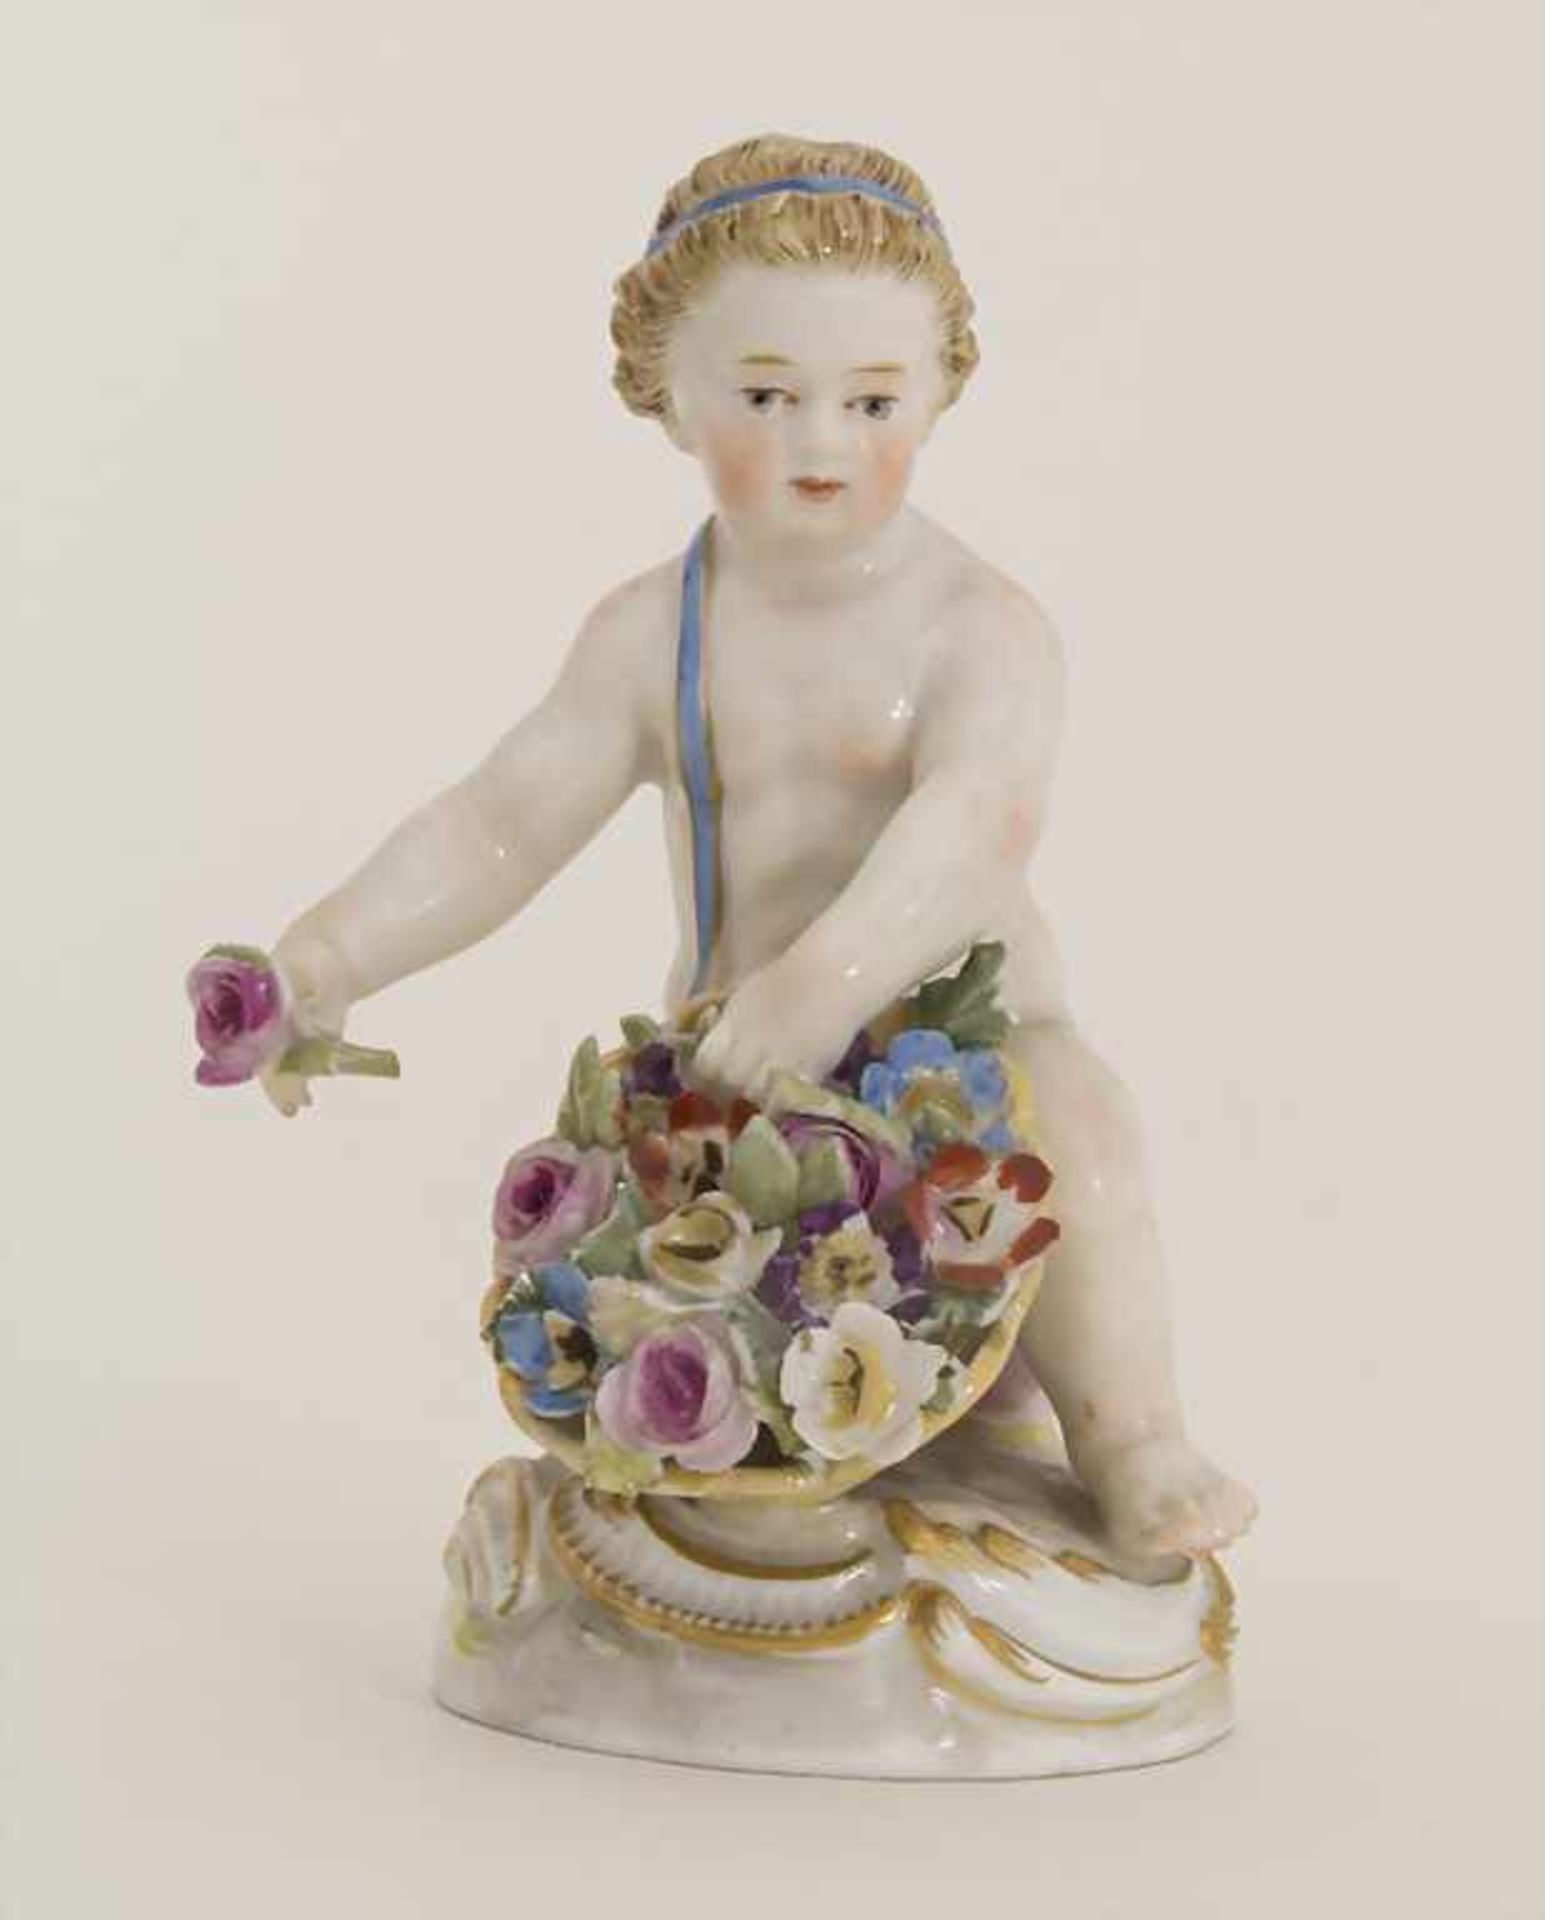 Kniender Putto mit Blumenkorb und einer Rose in der Hand / A kneeling cherub with flower basket